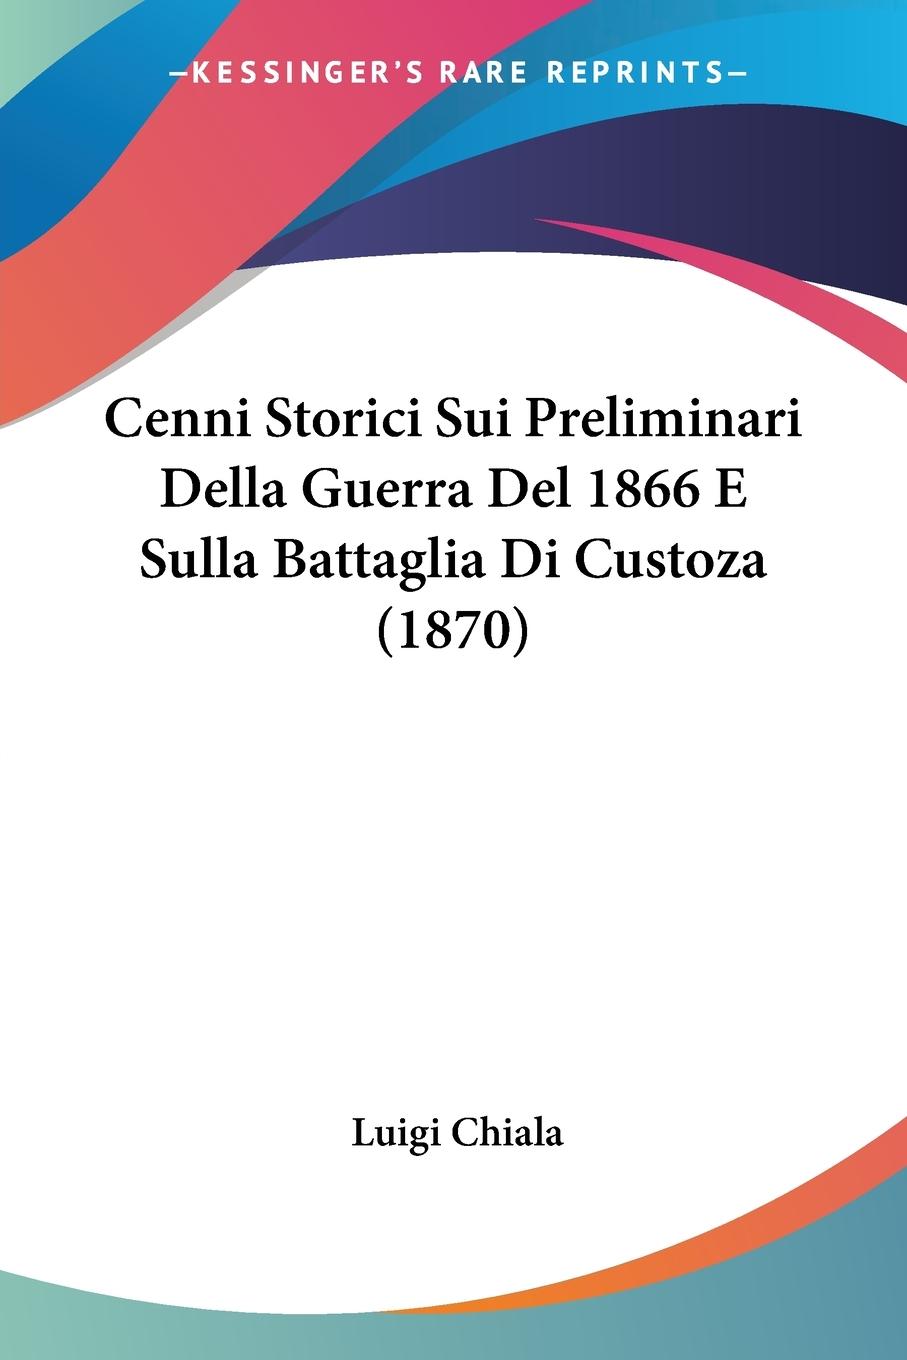 Cenni Storici Sui Preliminari Della Guerra Del 1866 E Sulla Battaglia Di Custoza (1870) - Chiala, Luigi